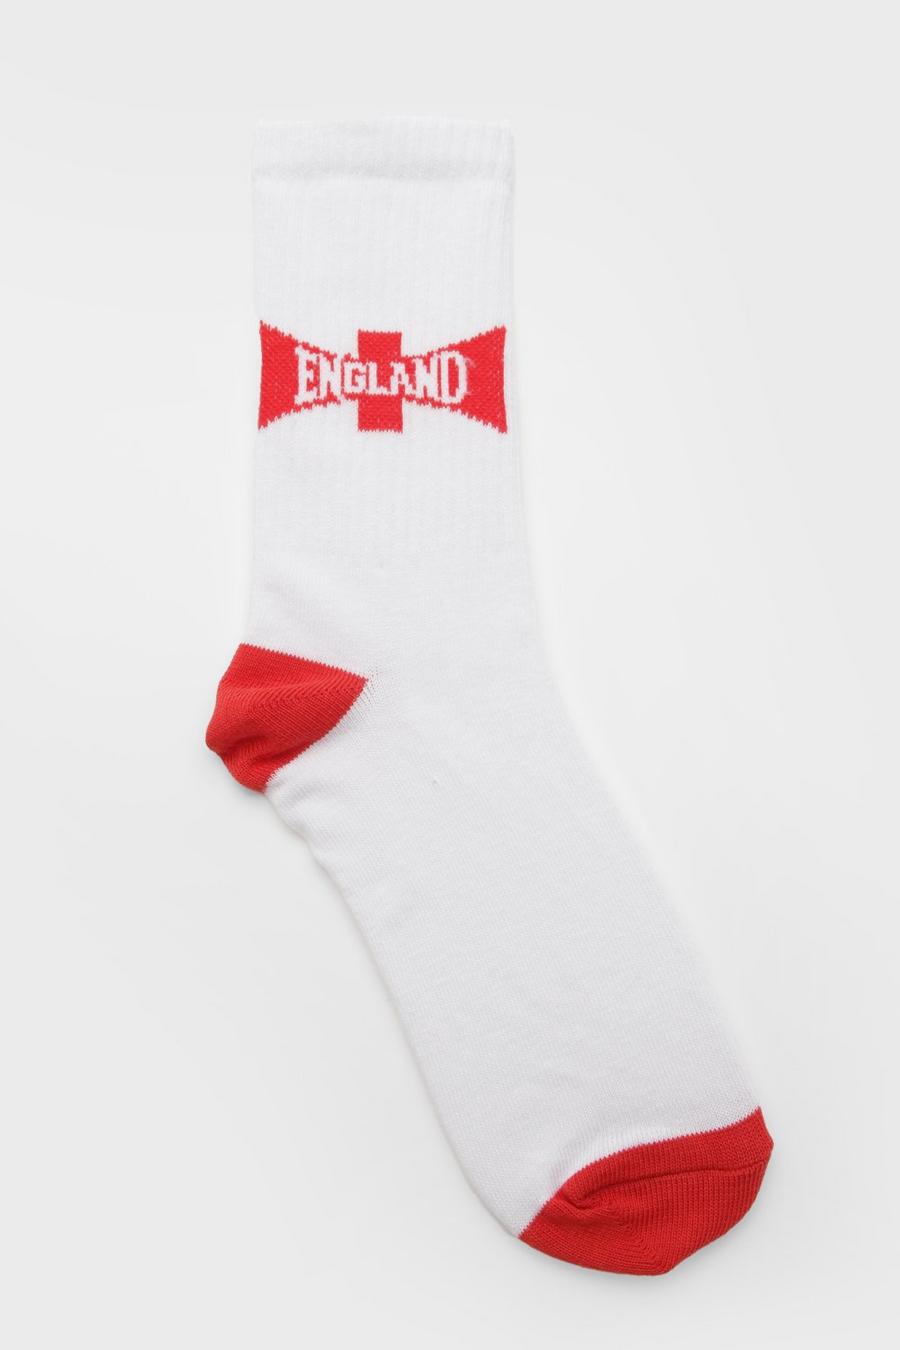 Chaussettes à slogan England, White